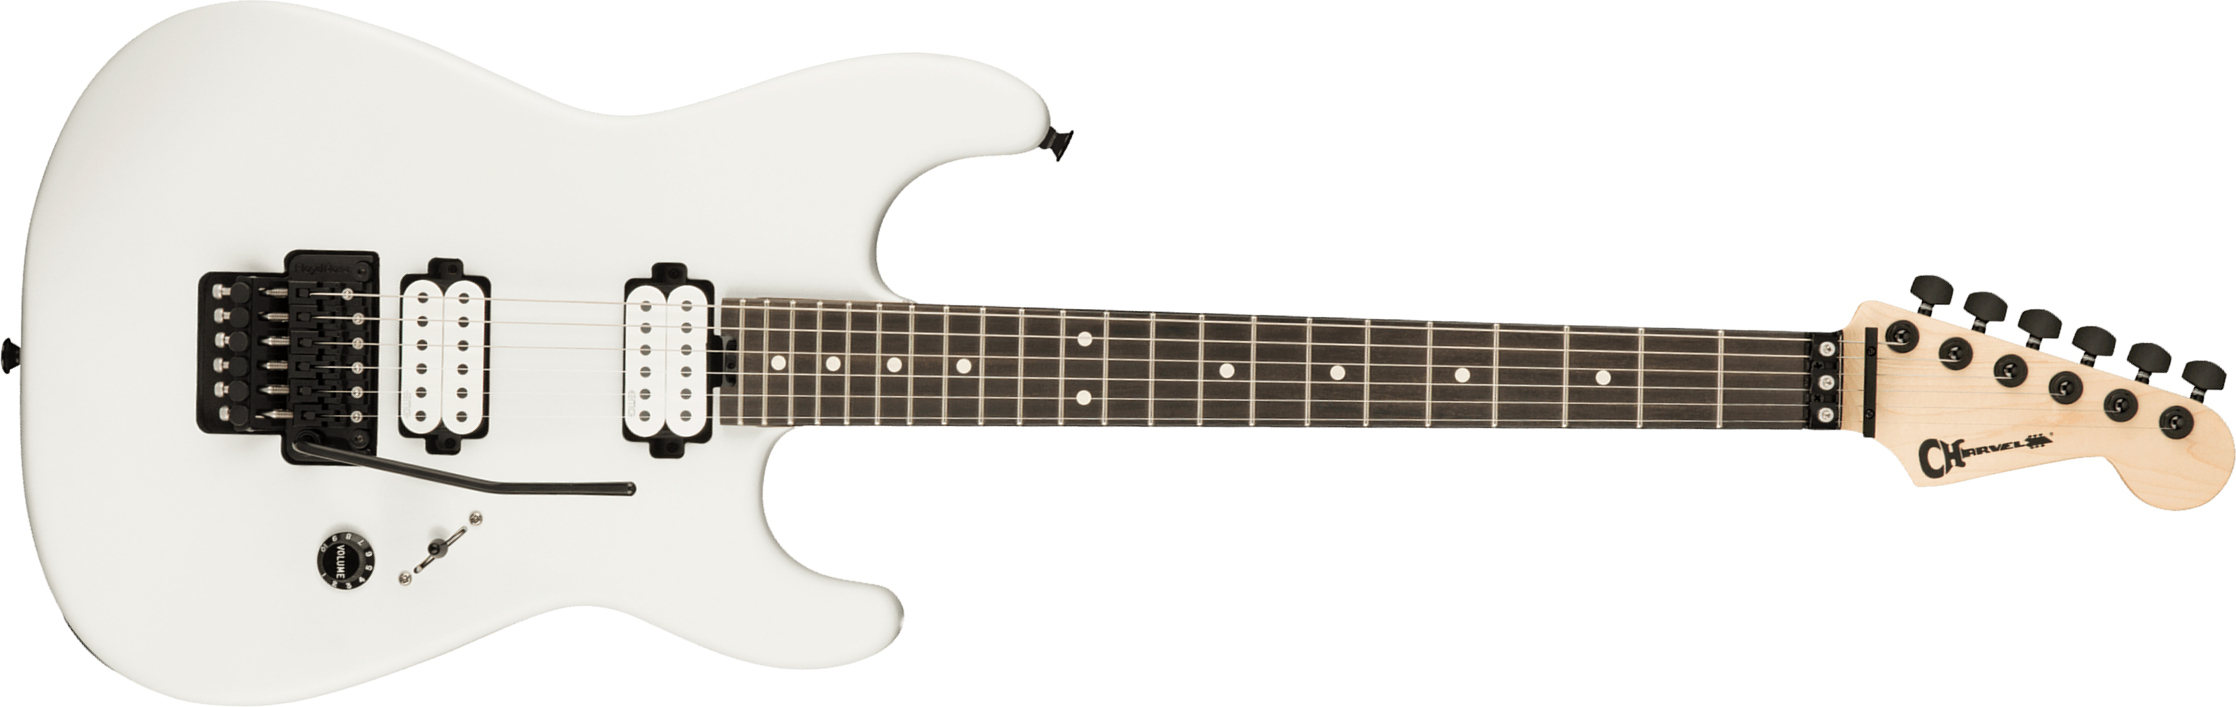 Charvel Jim Root San Dimas Style 1 Hh Fr E Pro-mod Signature 2h Emg Eb - Satin White - Guitarra eléctrica con forma de str. - Main picture